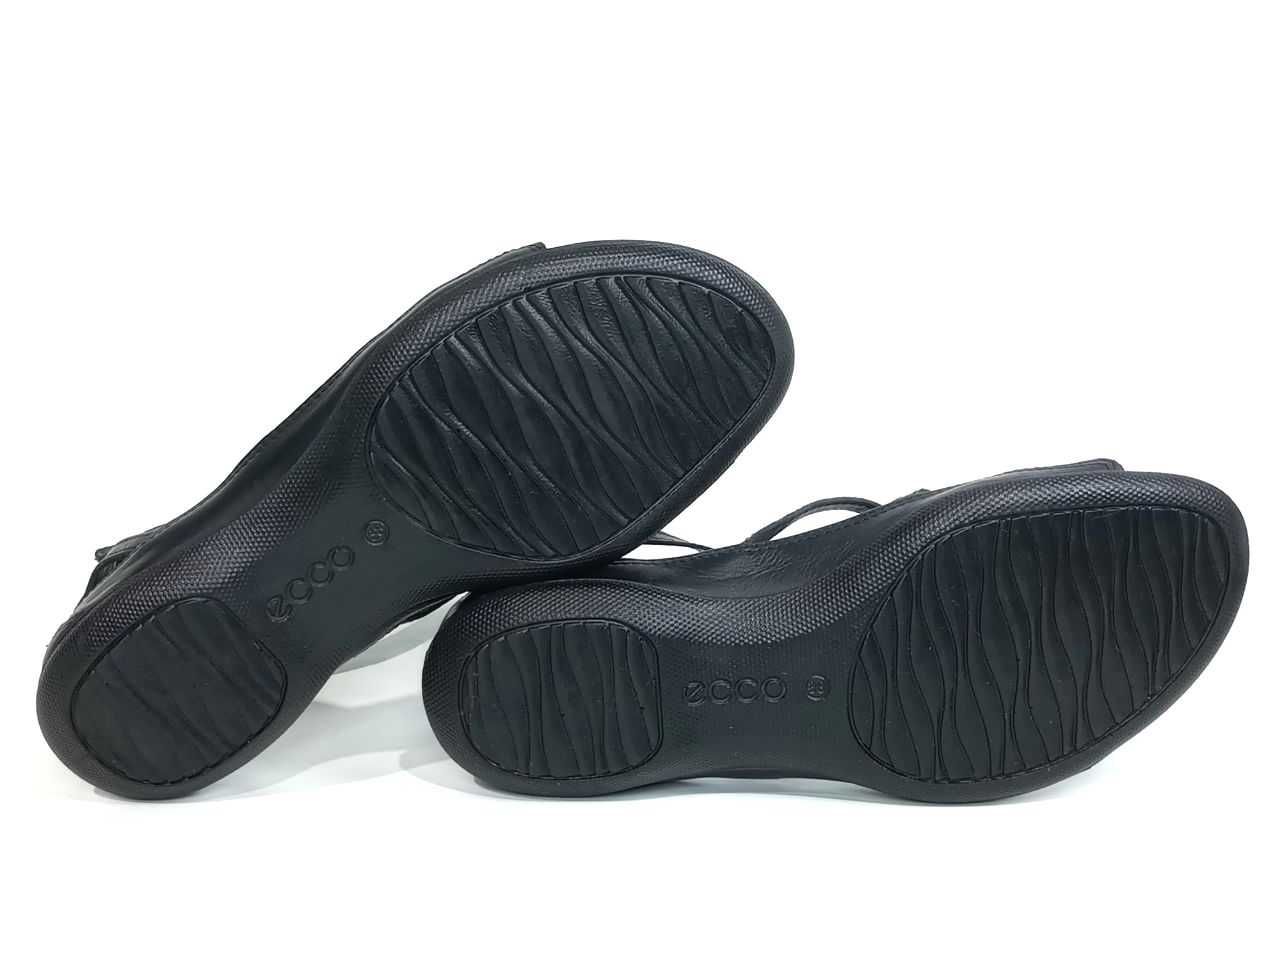 Кожаные женские сандалии Ecco Flash Black Оригинал